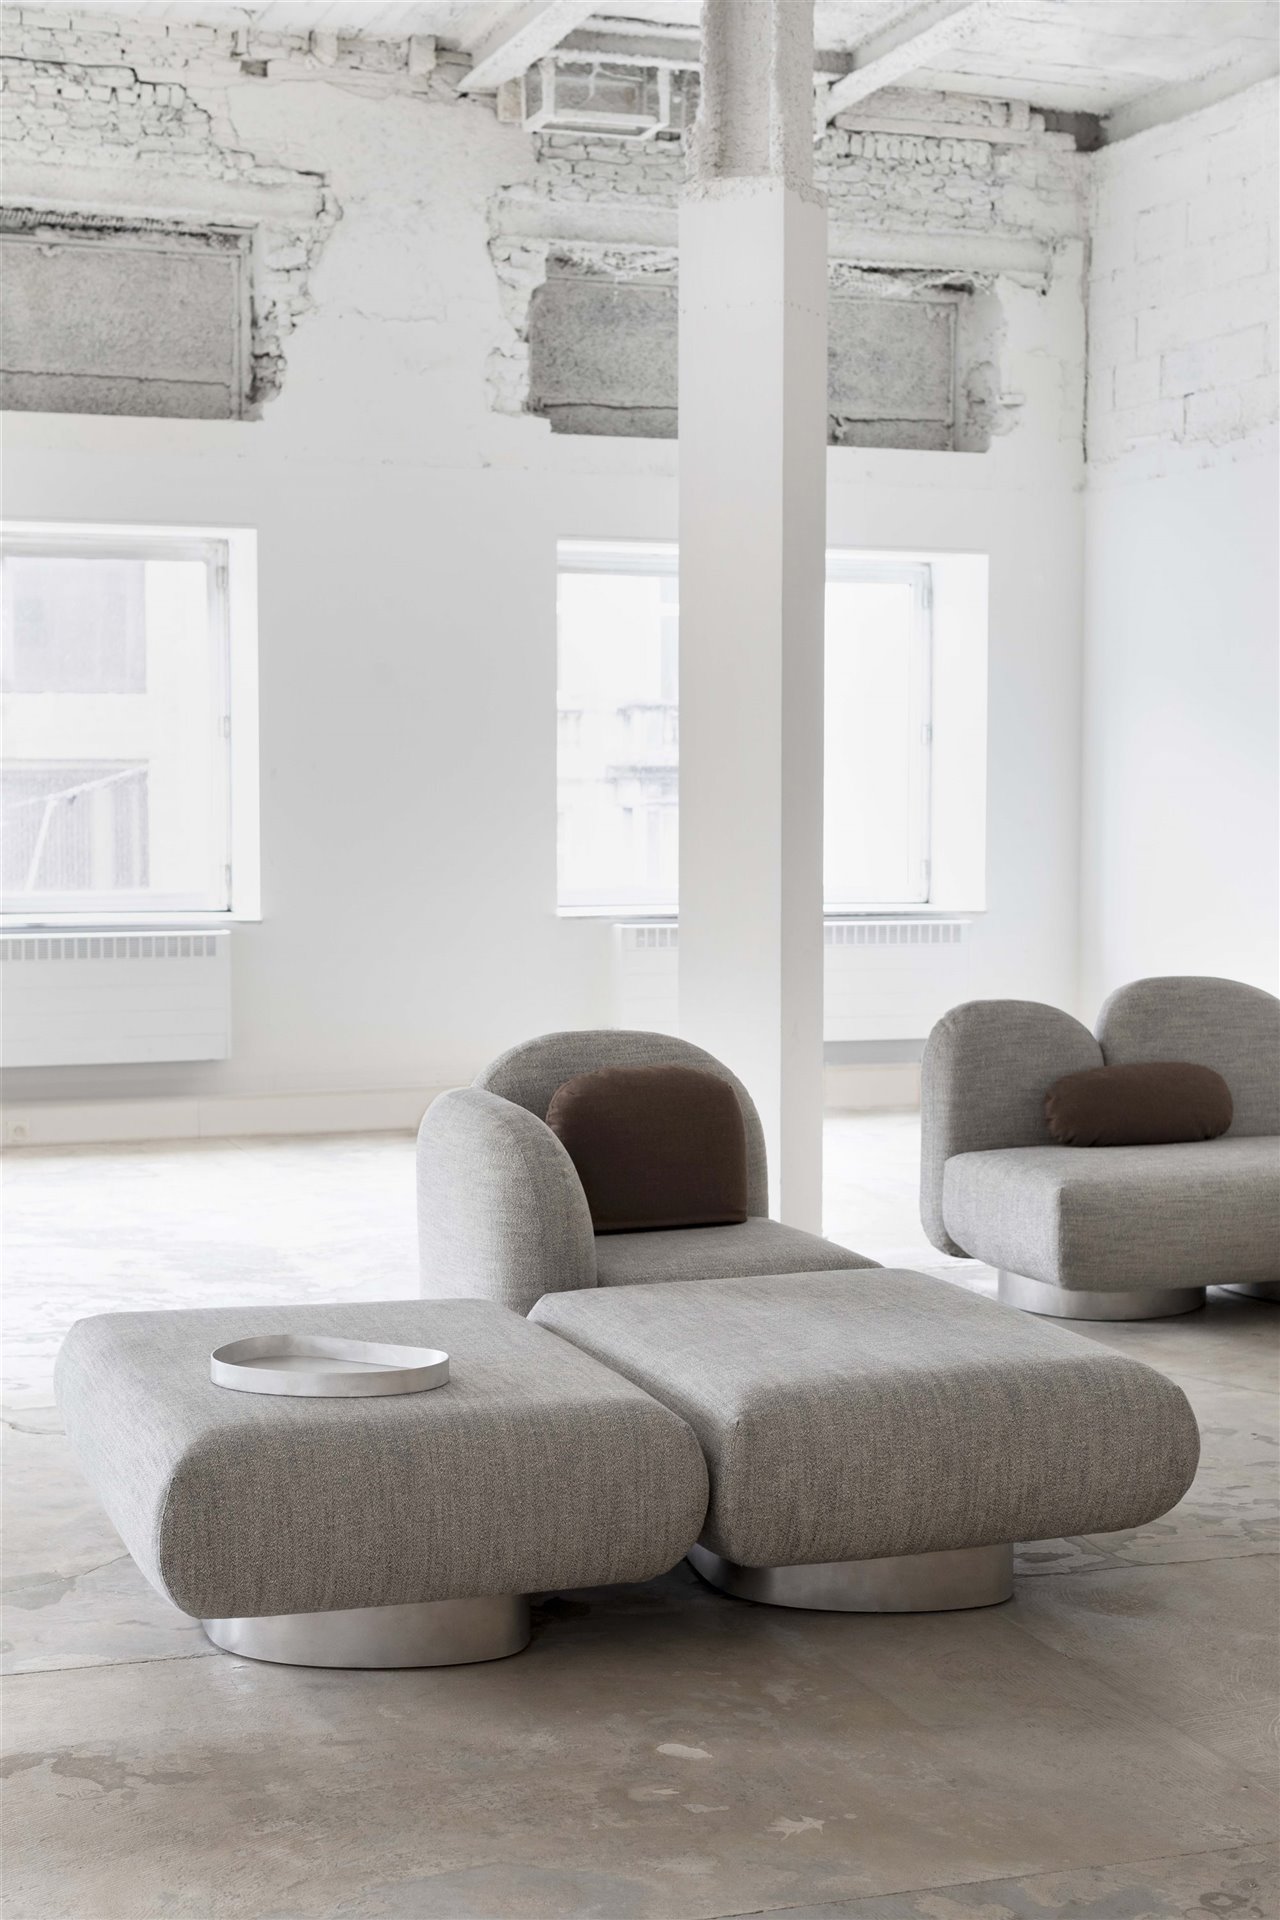 El sofá dispone de diferentes elementos como pufs, mesas auxiliares, partes esquineras y respaldos, con los que crear tu propio Assemble.